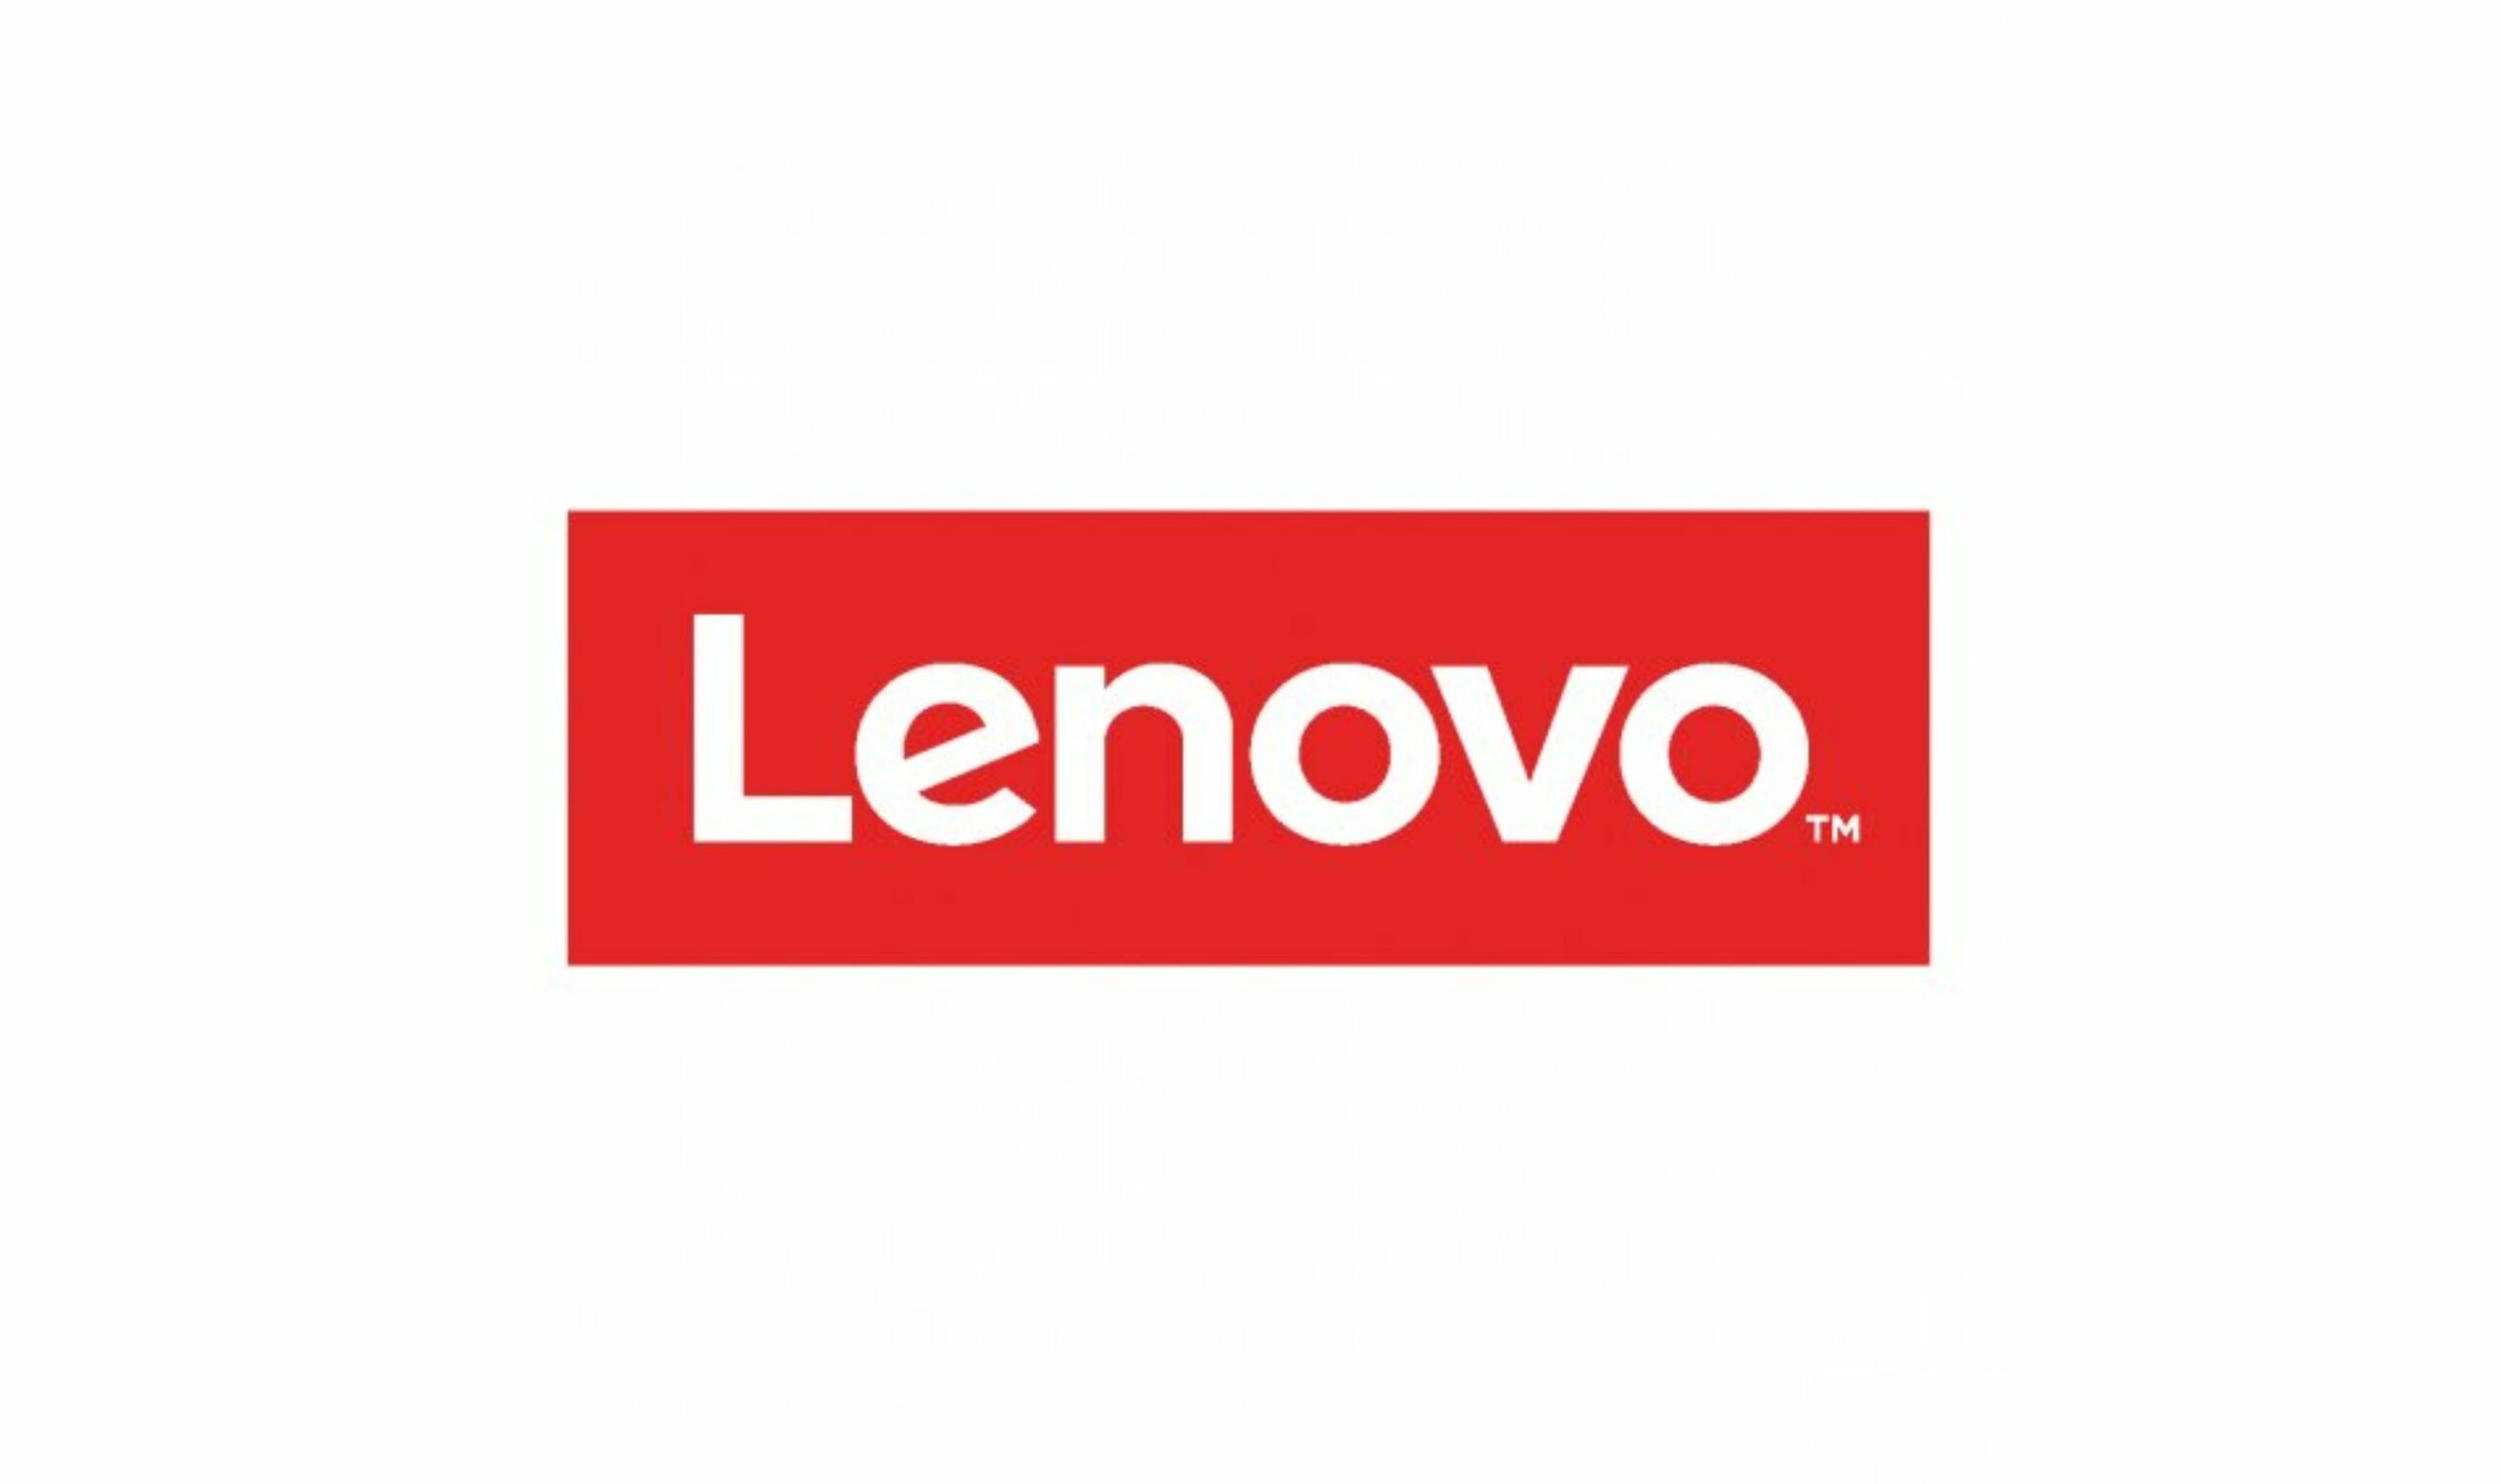 Kiemelt Lenovo logó